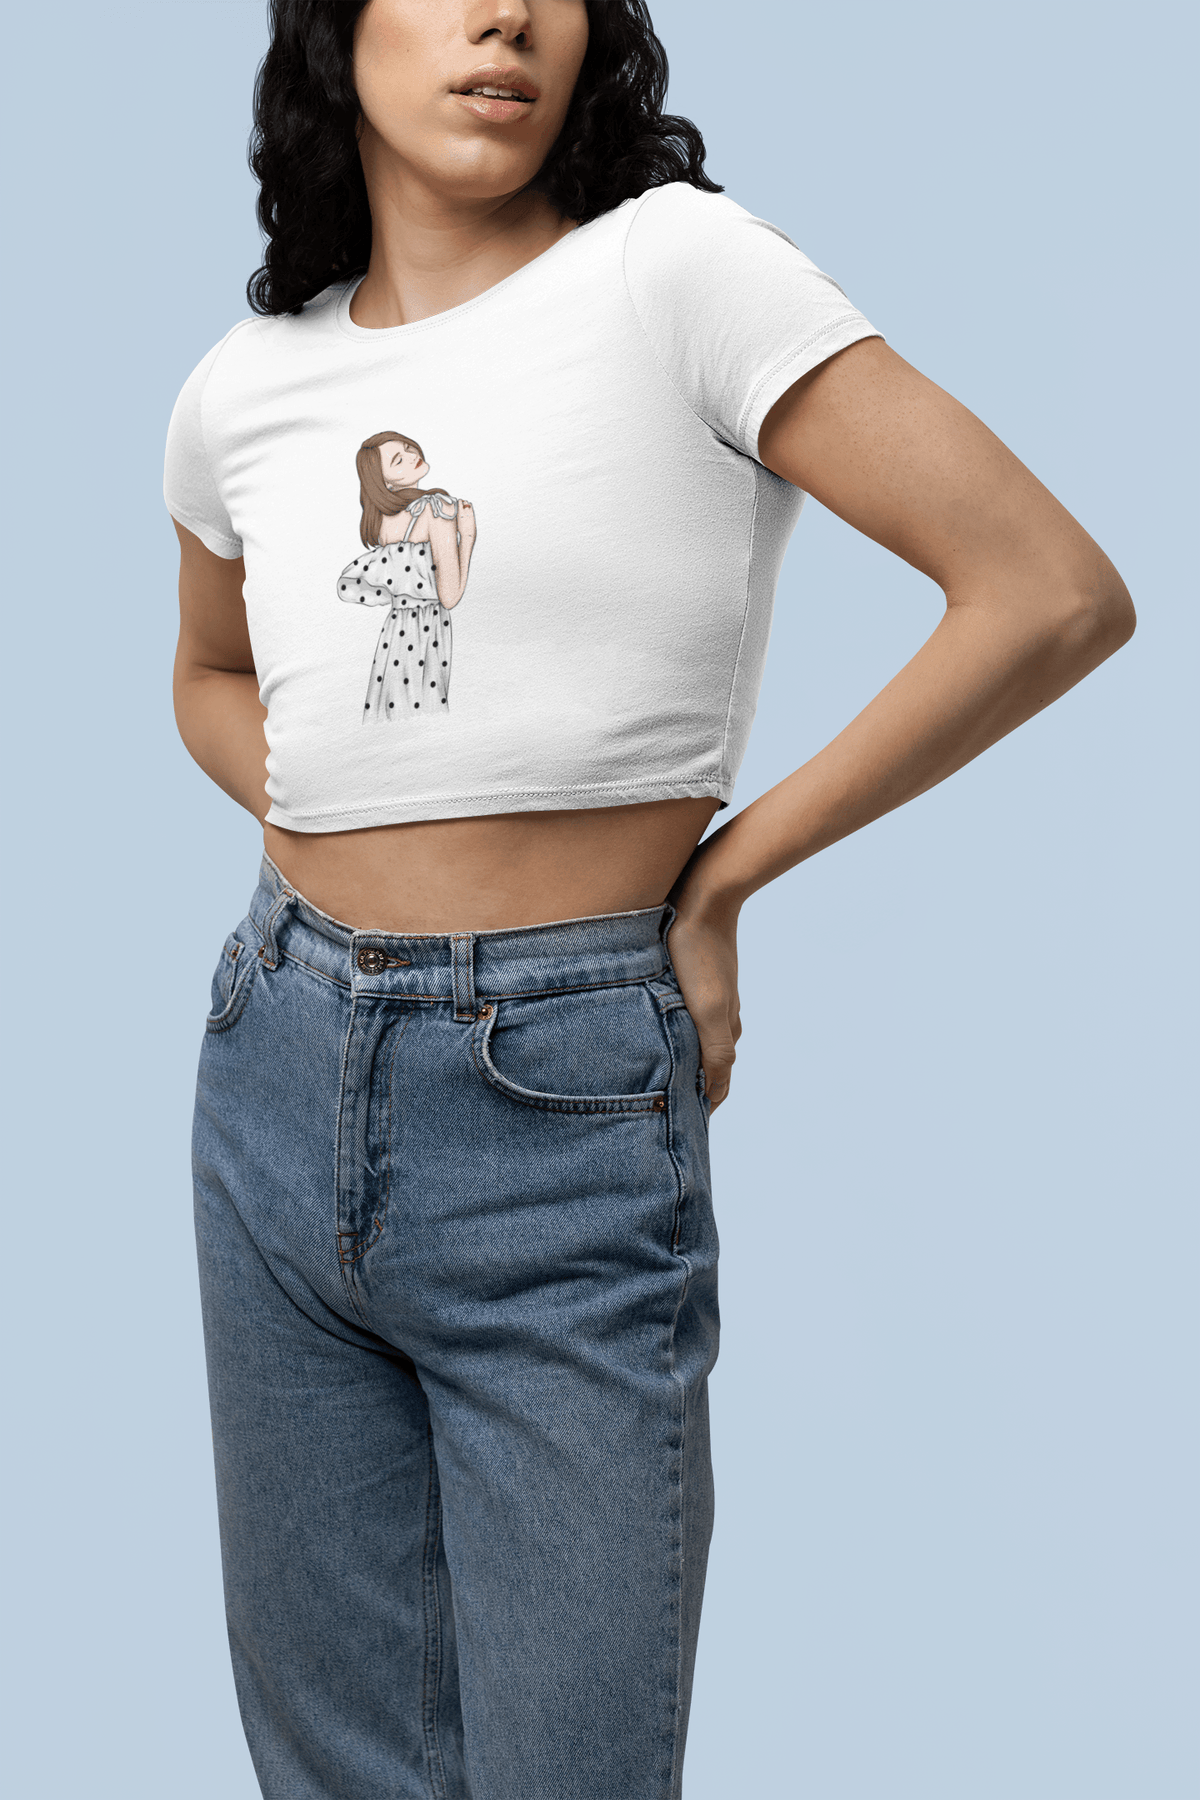 Stylish Swagger Cropped T-Shirt - StylinArt